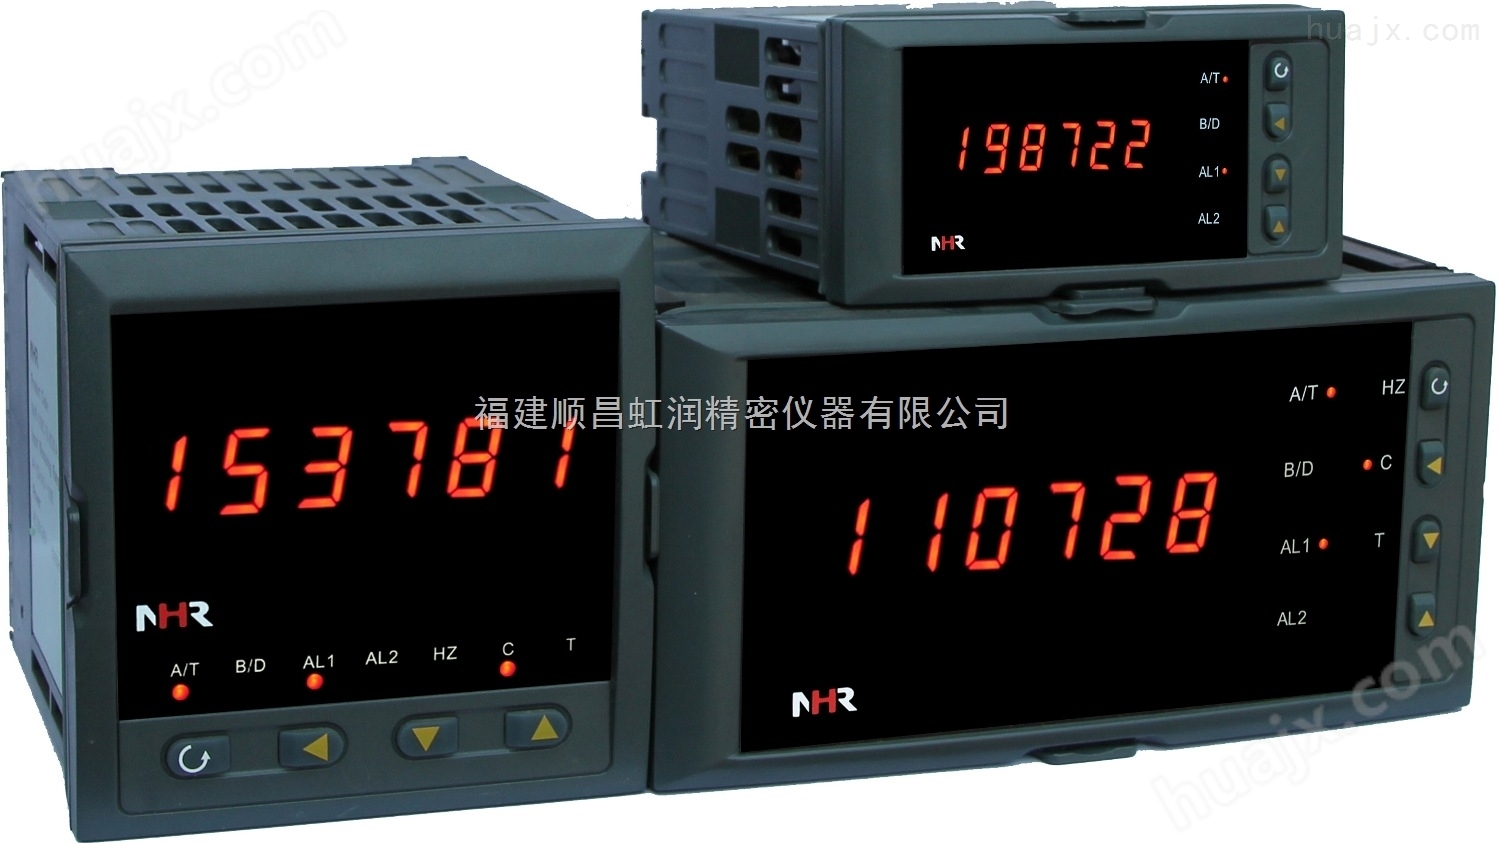 福建虹润厂家推出NHR-2300系列计数器